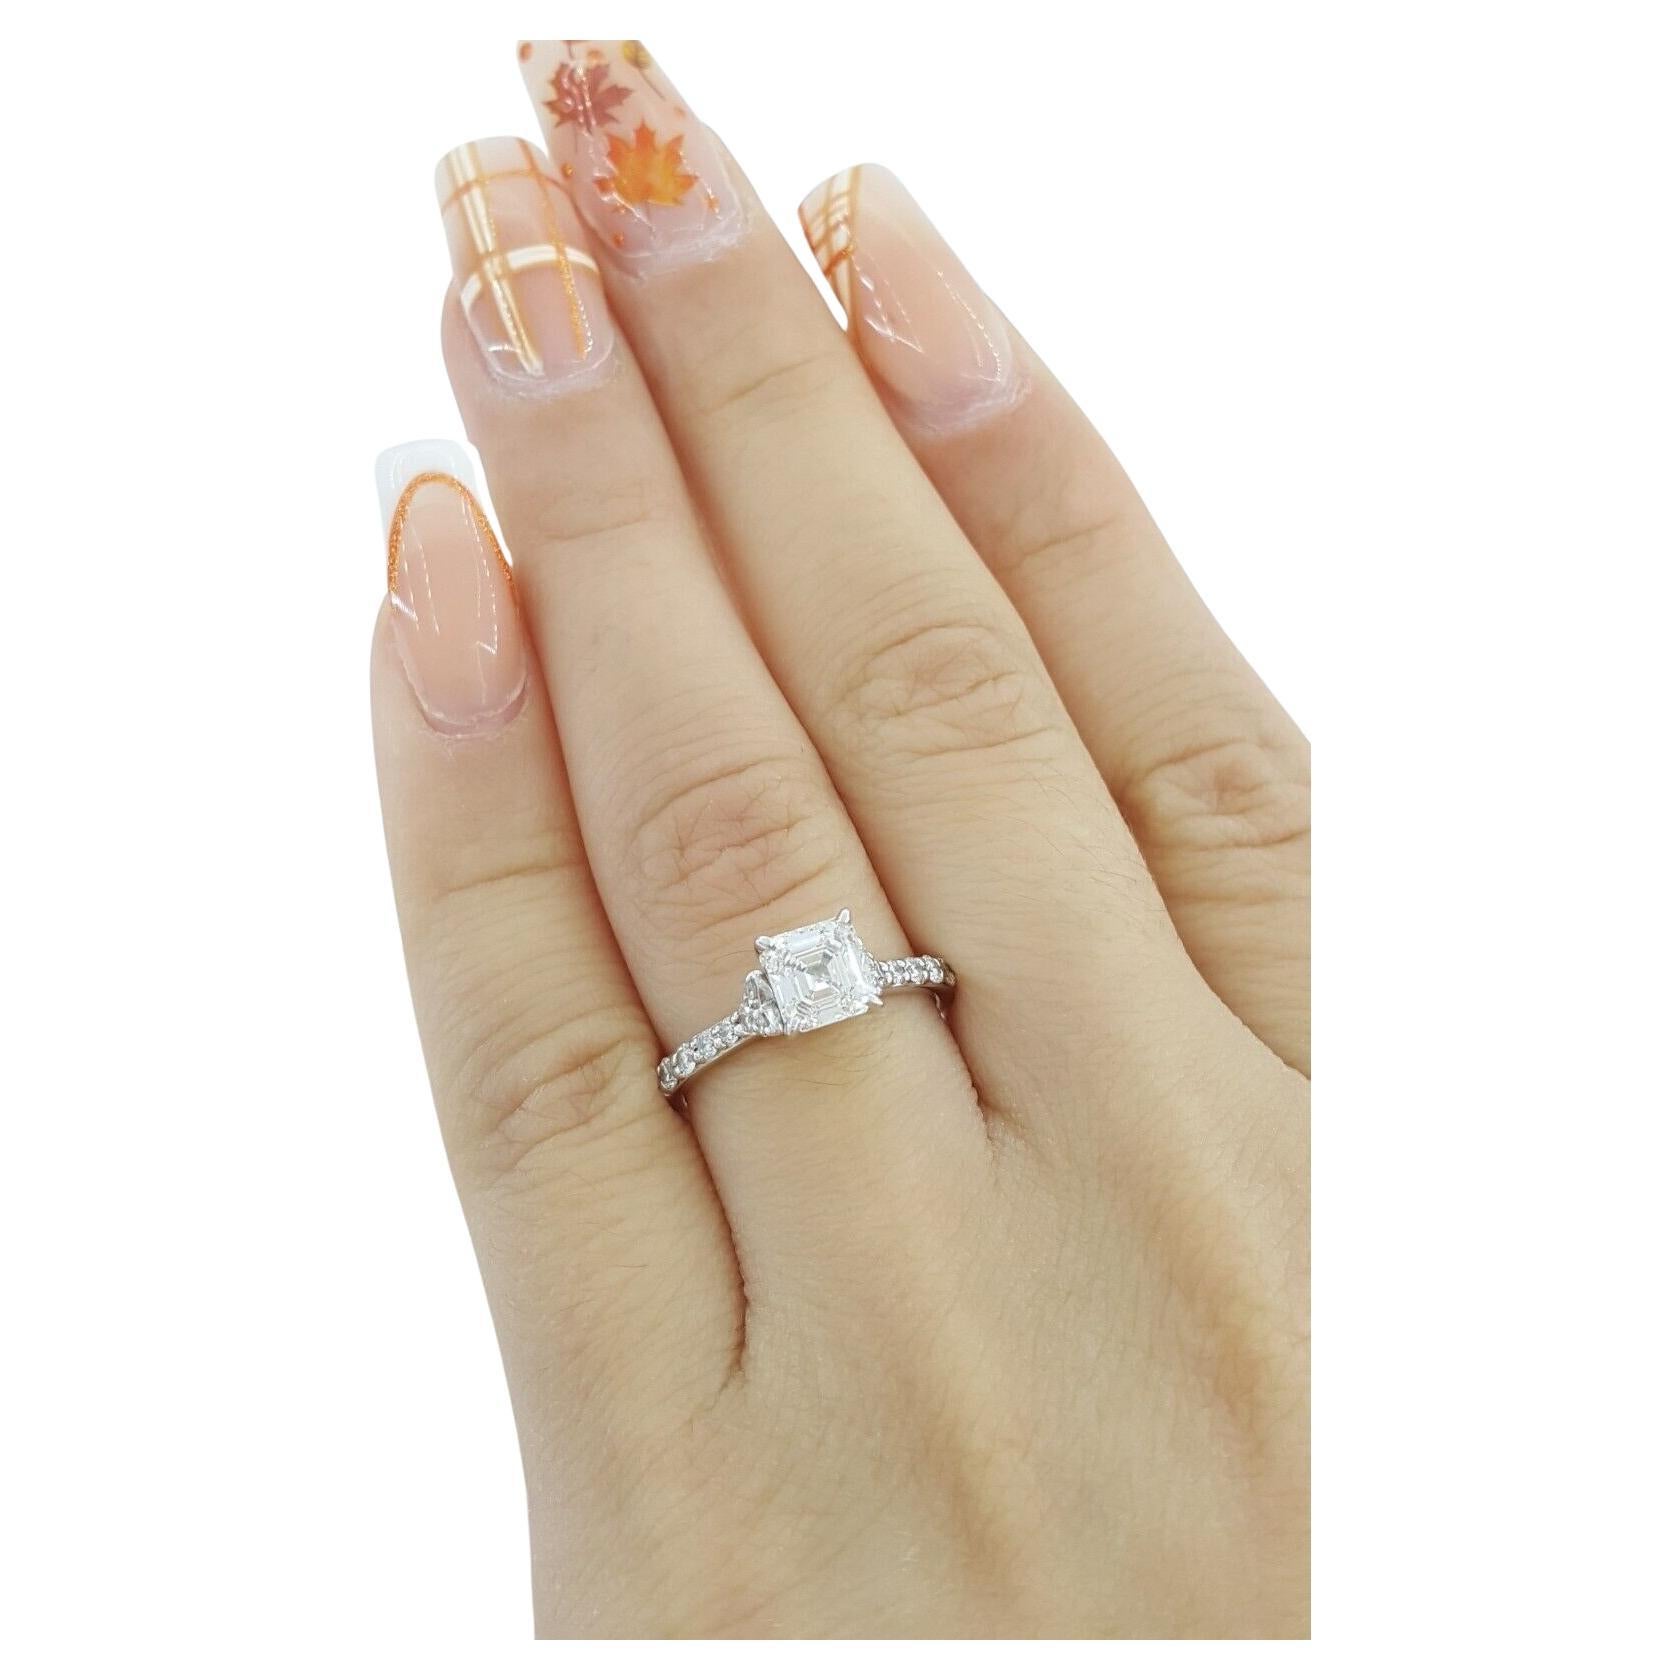  Bague de fiançailles en or blanc 18k avec diamant de taille Asscher. 

La bague pèse 2,6 grammes, taille 4,5 (peut être adaptée à la plupart des tailles de doigt), la pierre centrale est un diamant Asscher naturel de taille émeraude carrée pesant